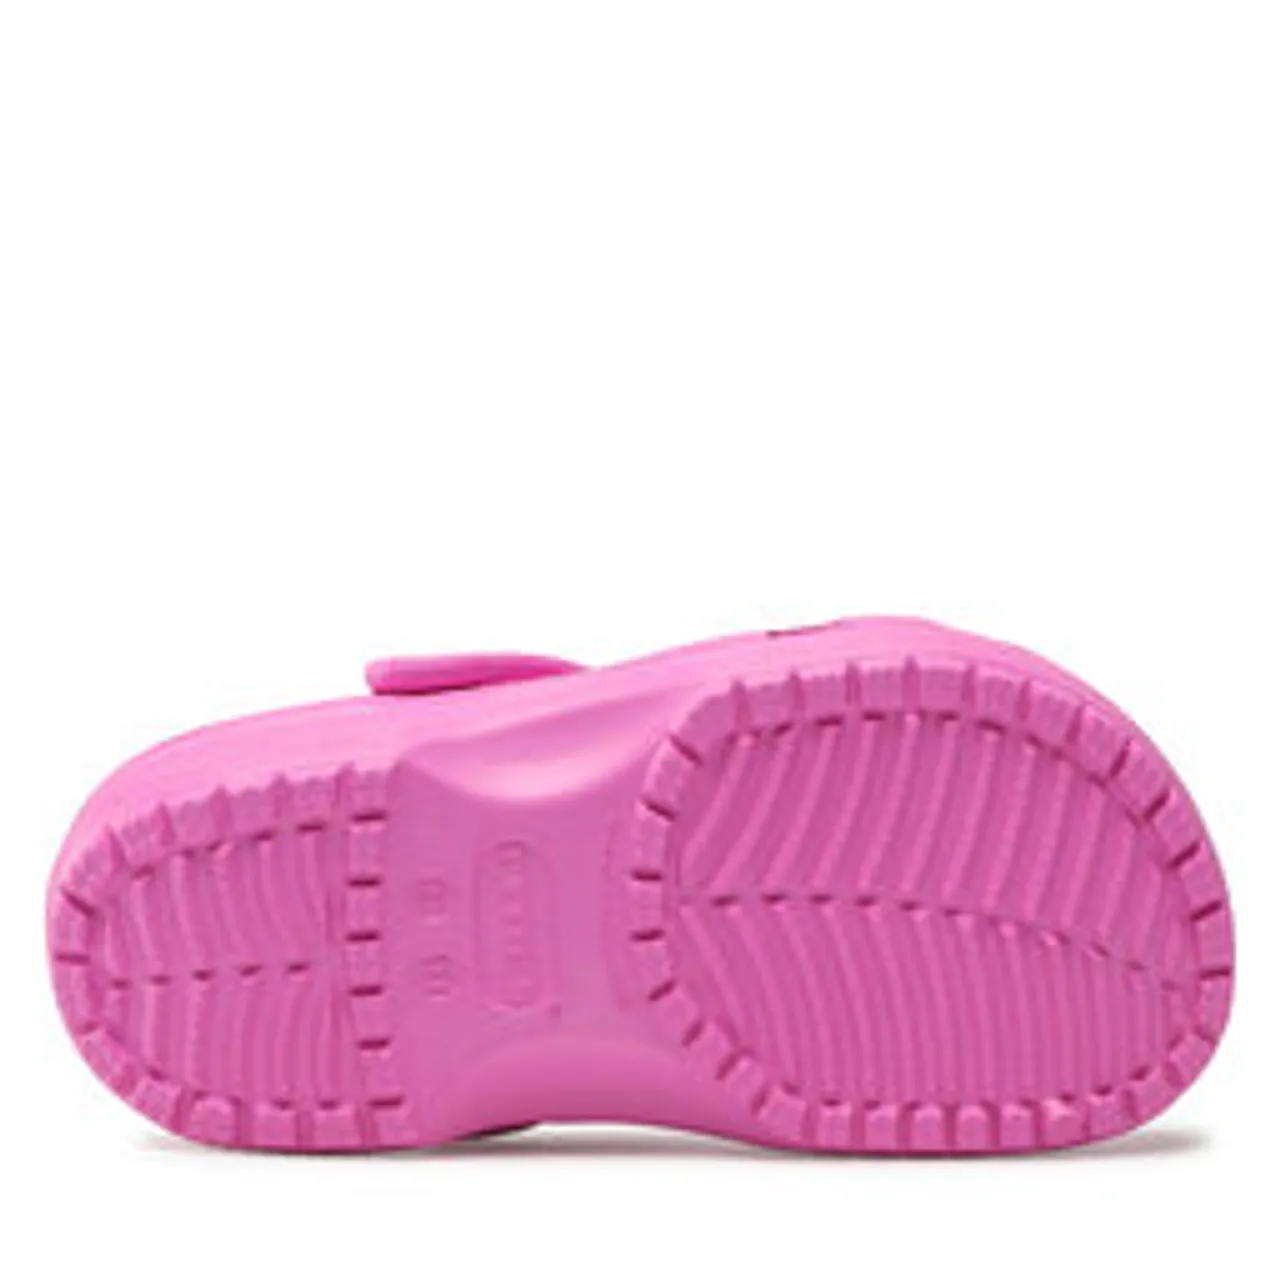 Pantoletten Crocs Classic Clog K 206991 Taffy Pink